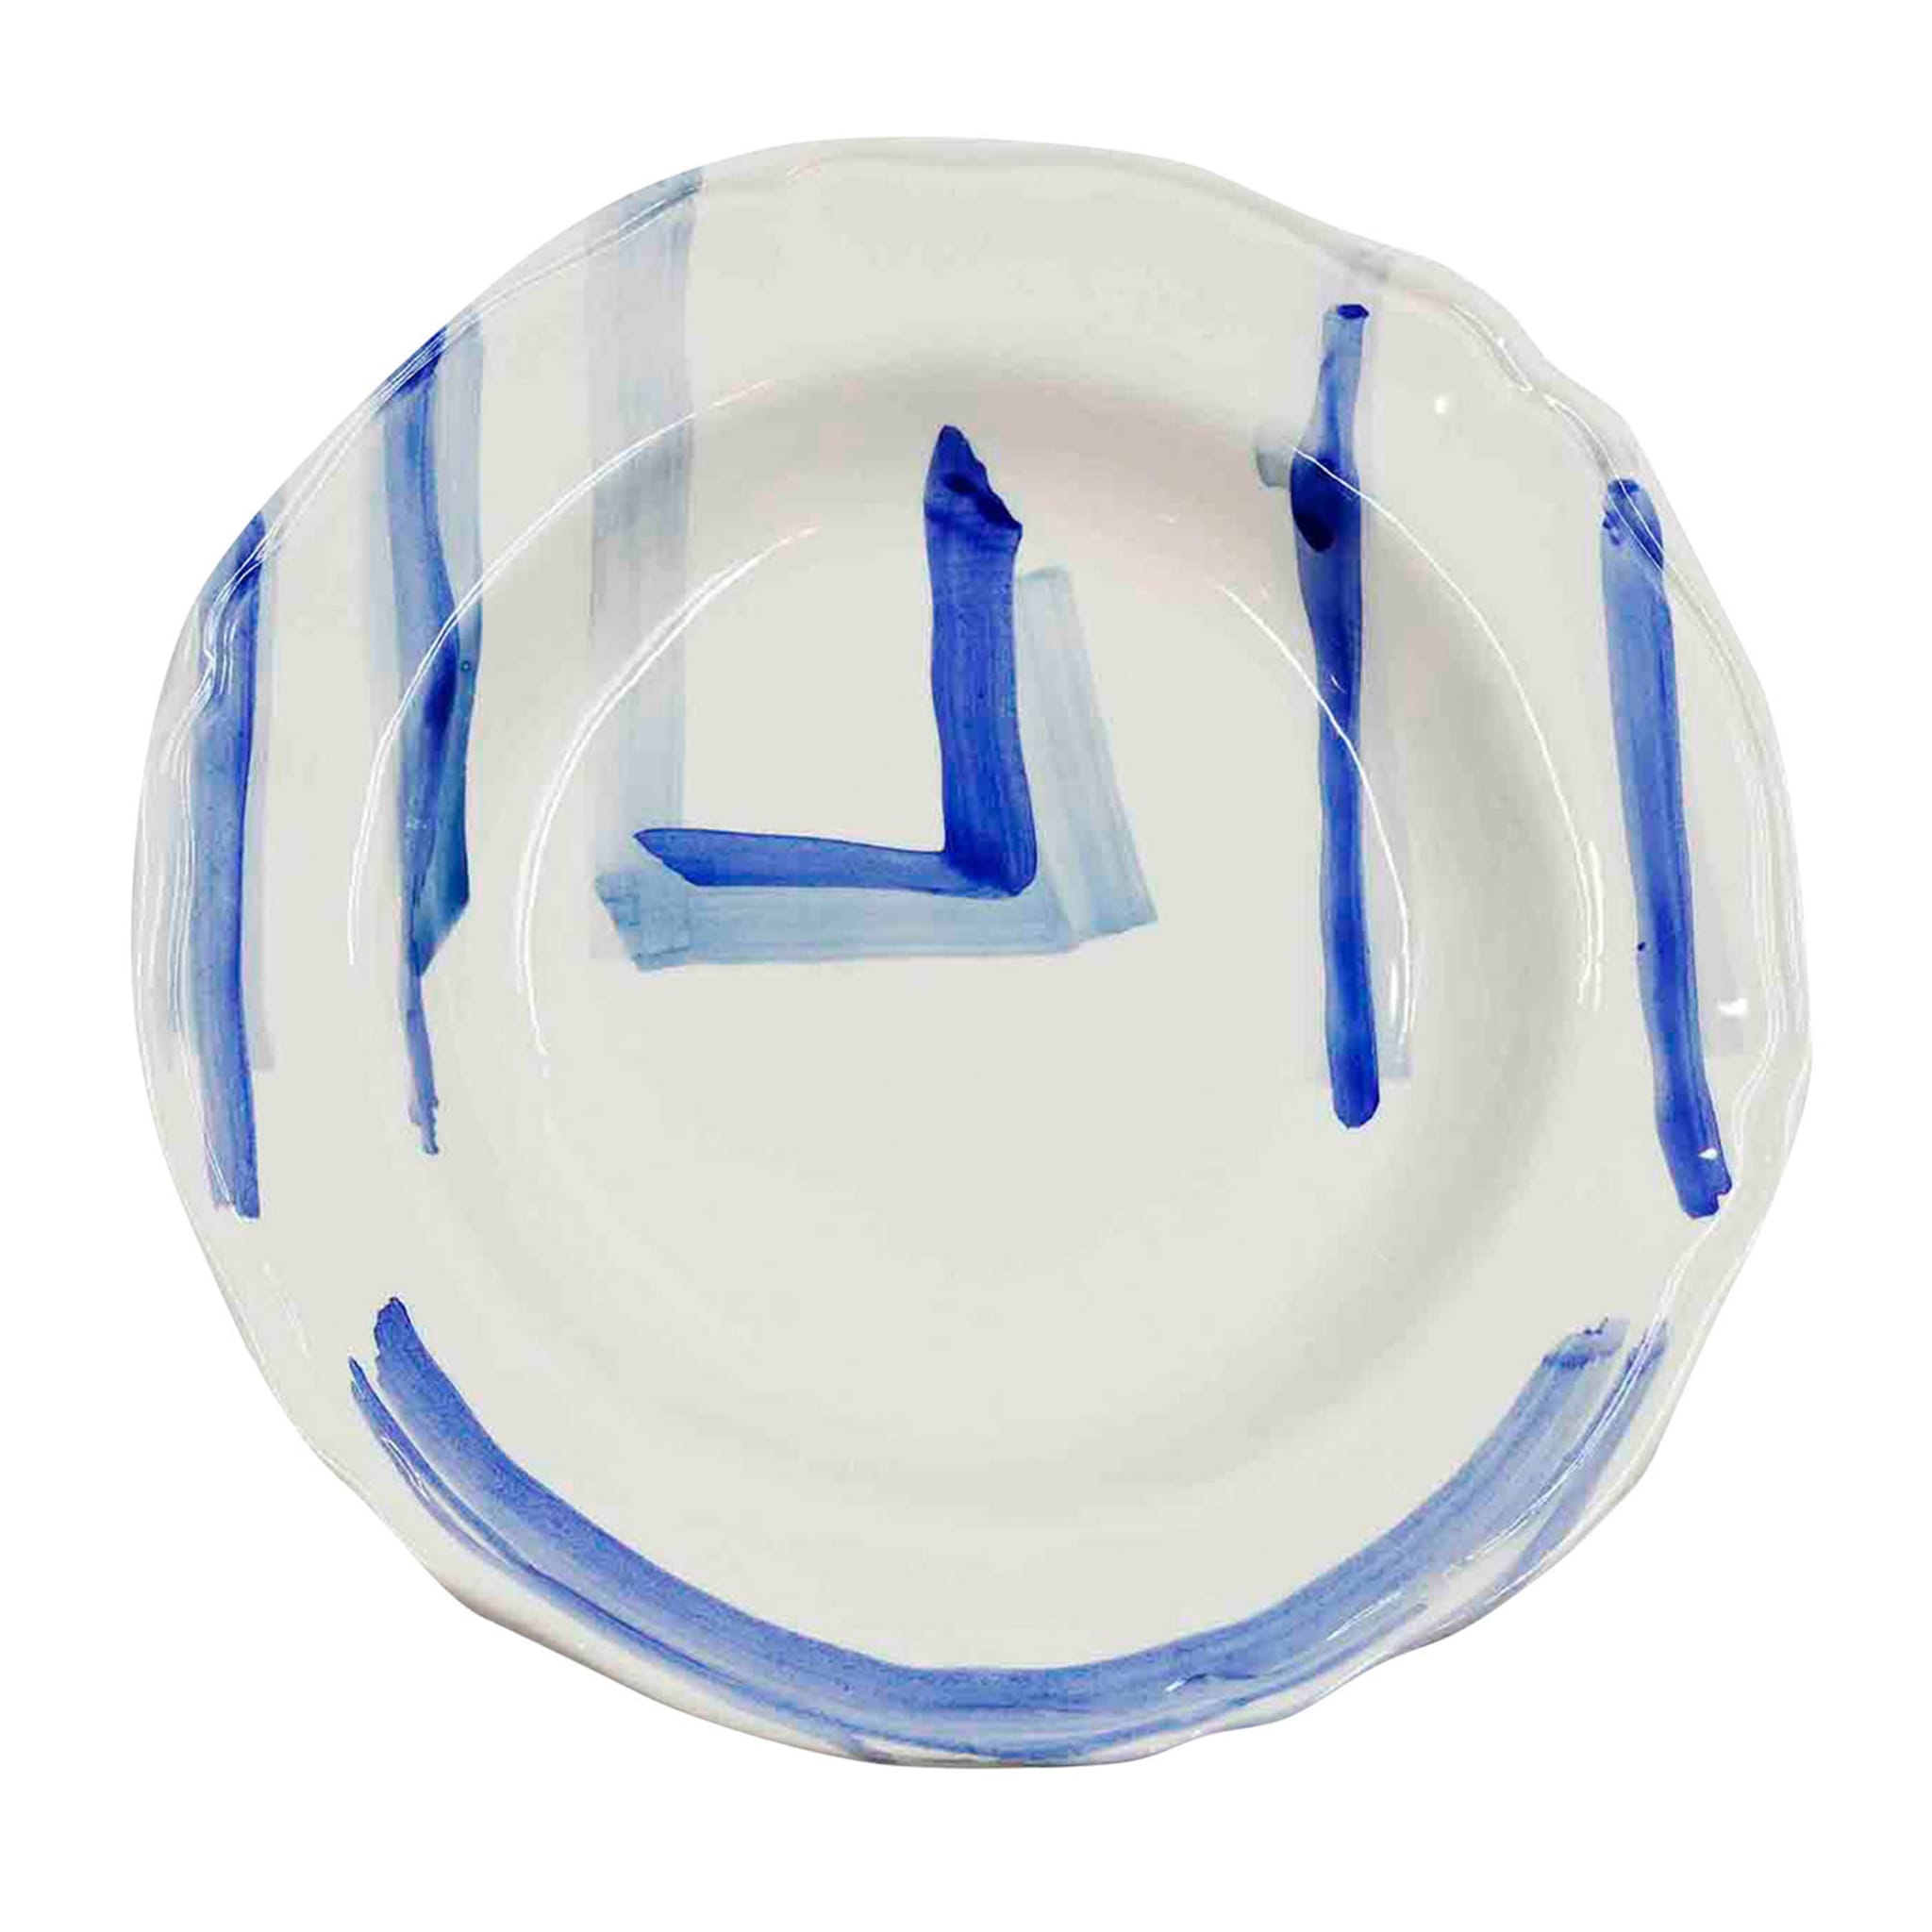 Premium Italian Ceramic Artisan Plate